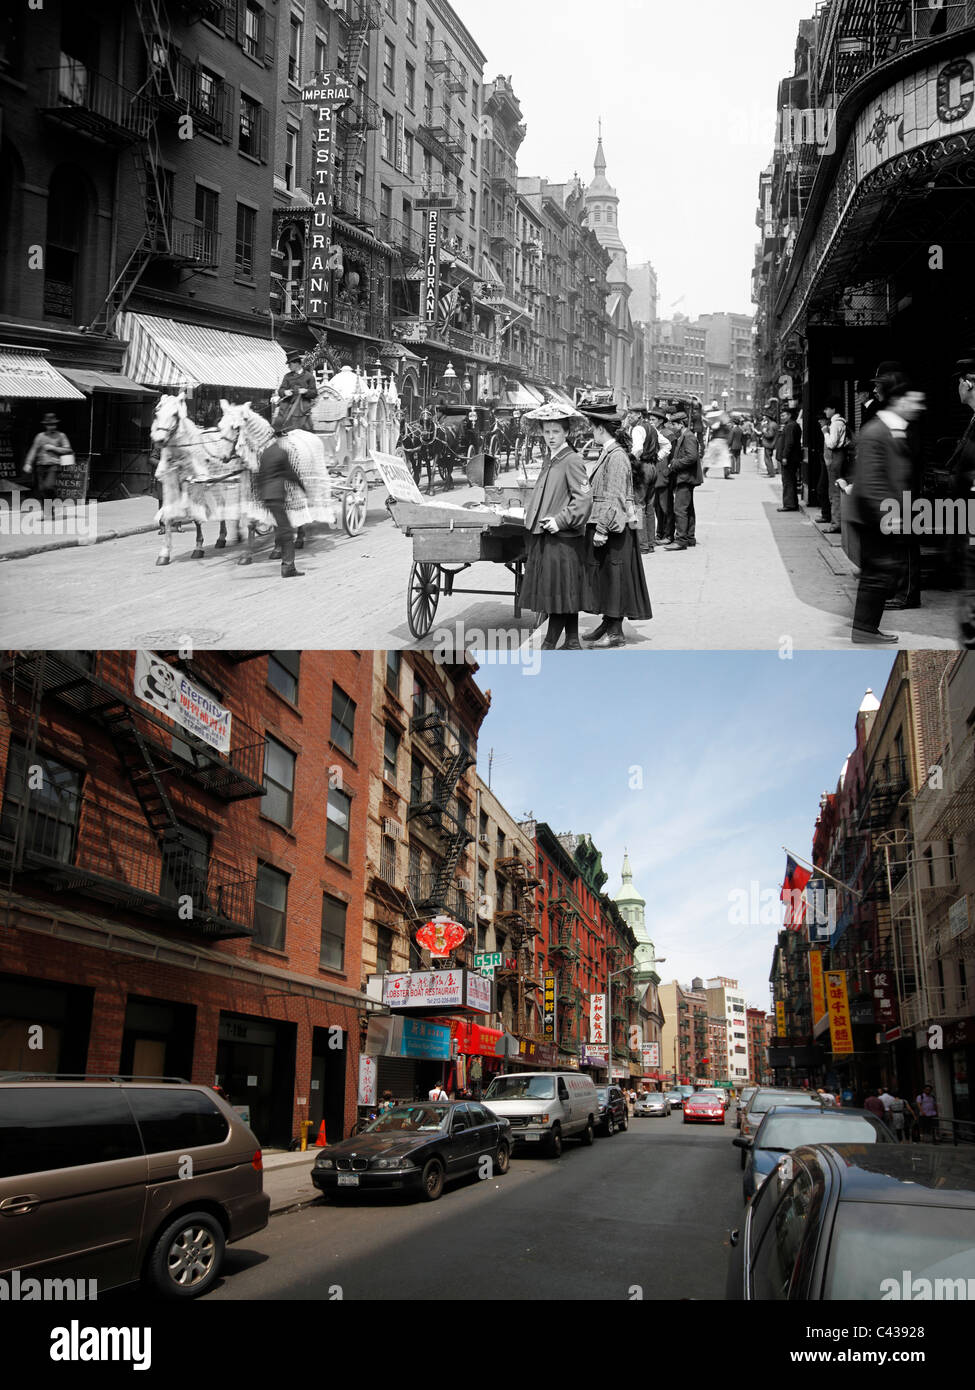 Mott Street Chinatown, New York City - Ieri e oggi foto in alto circa 1900 - immagine inferiore Maggio 2011 Foto Stock